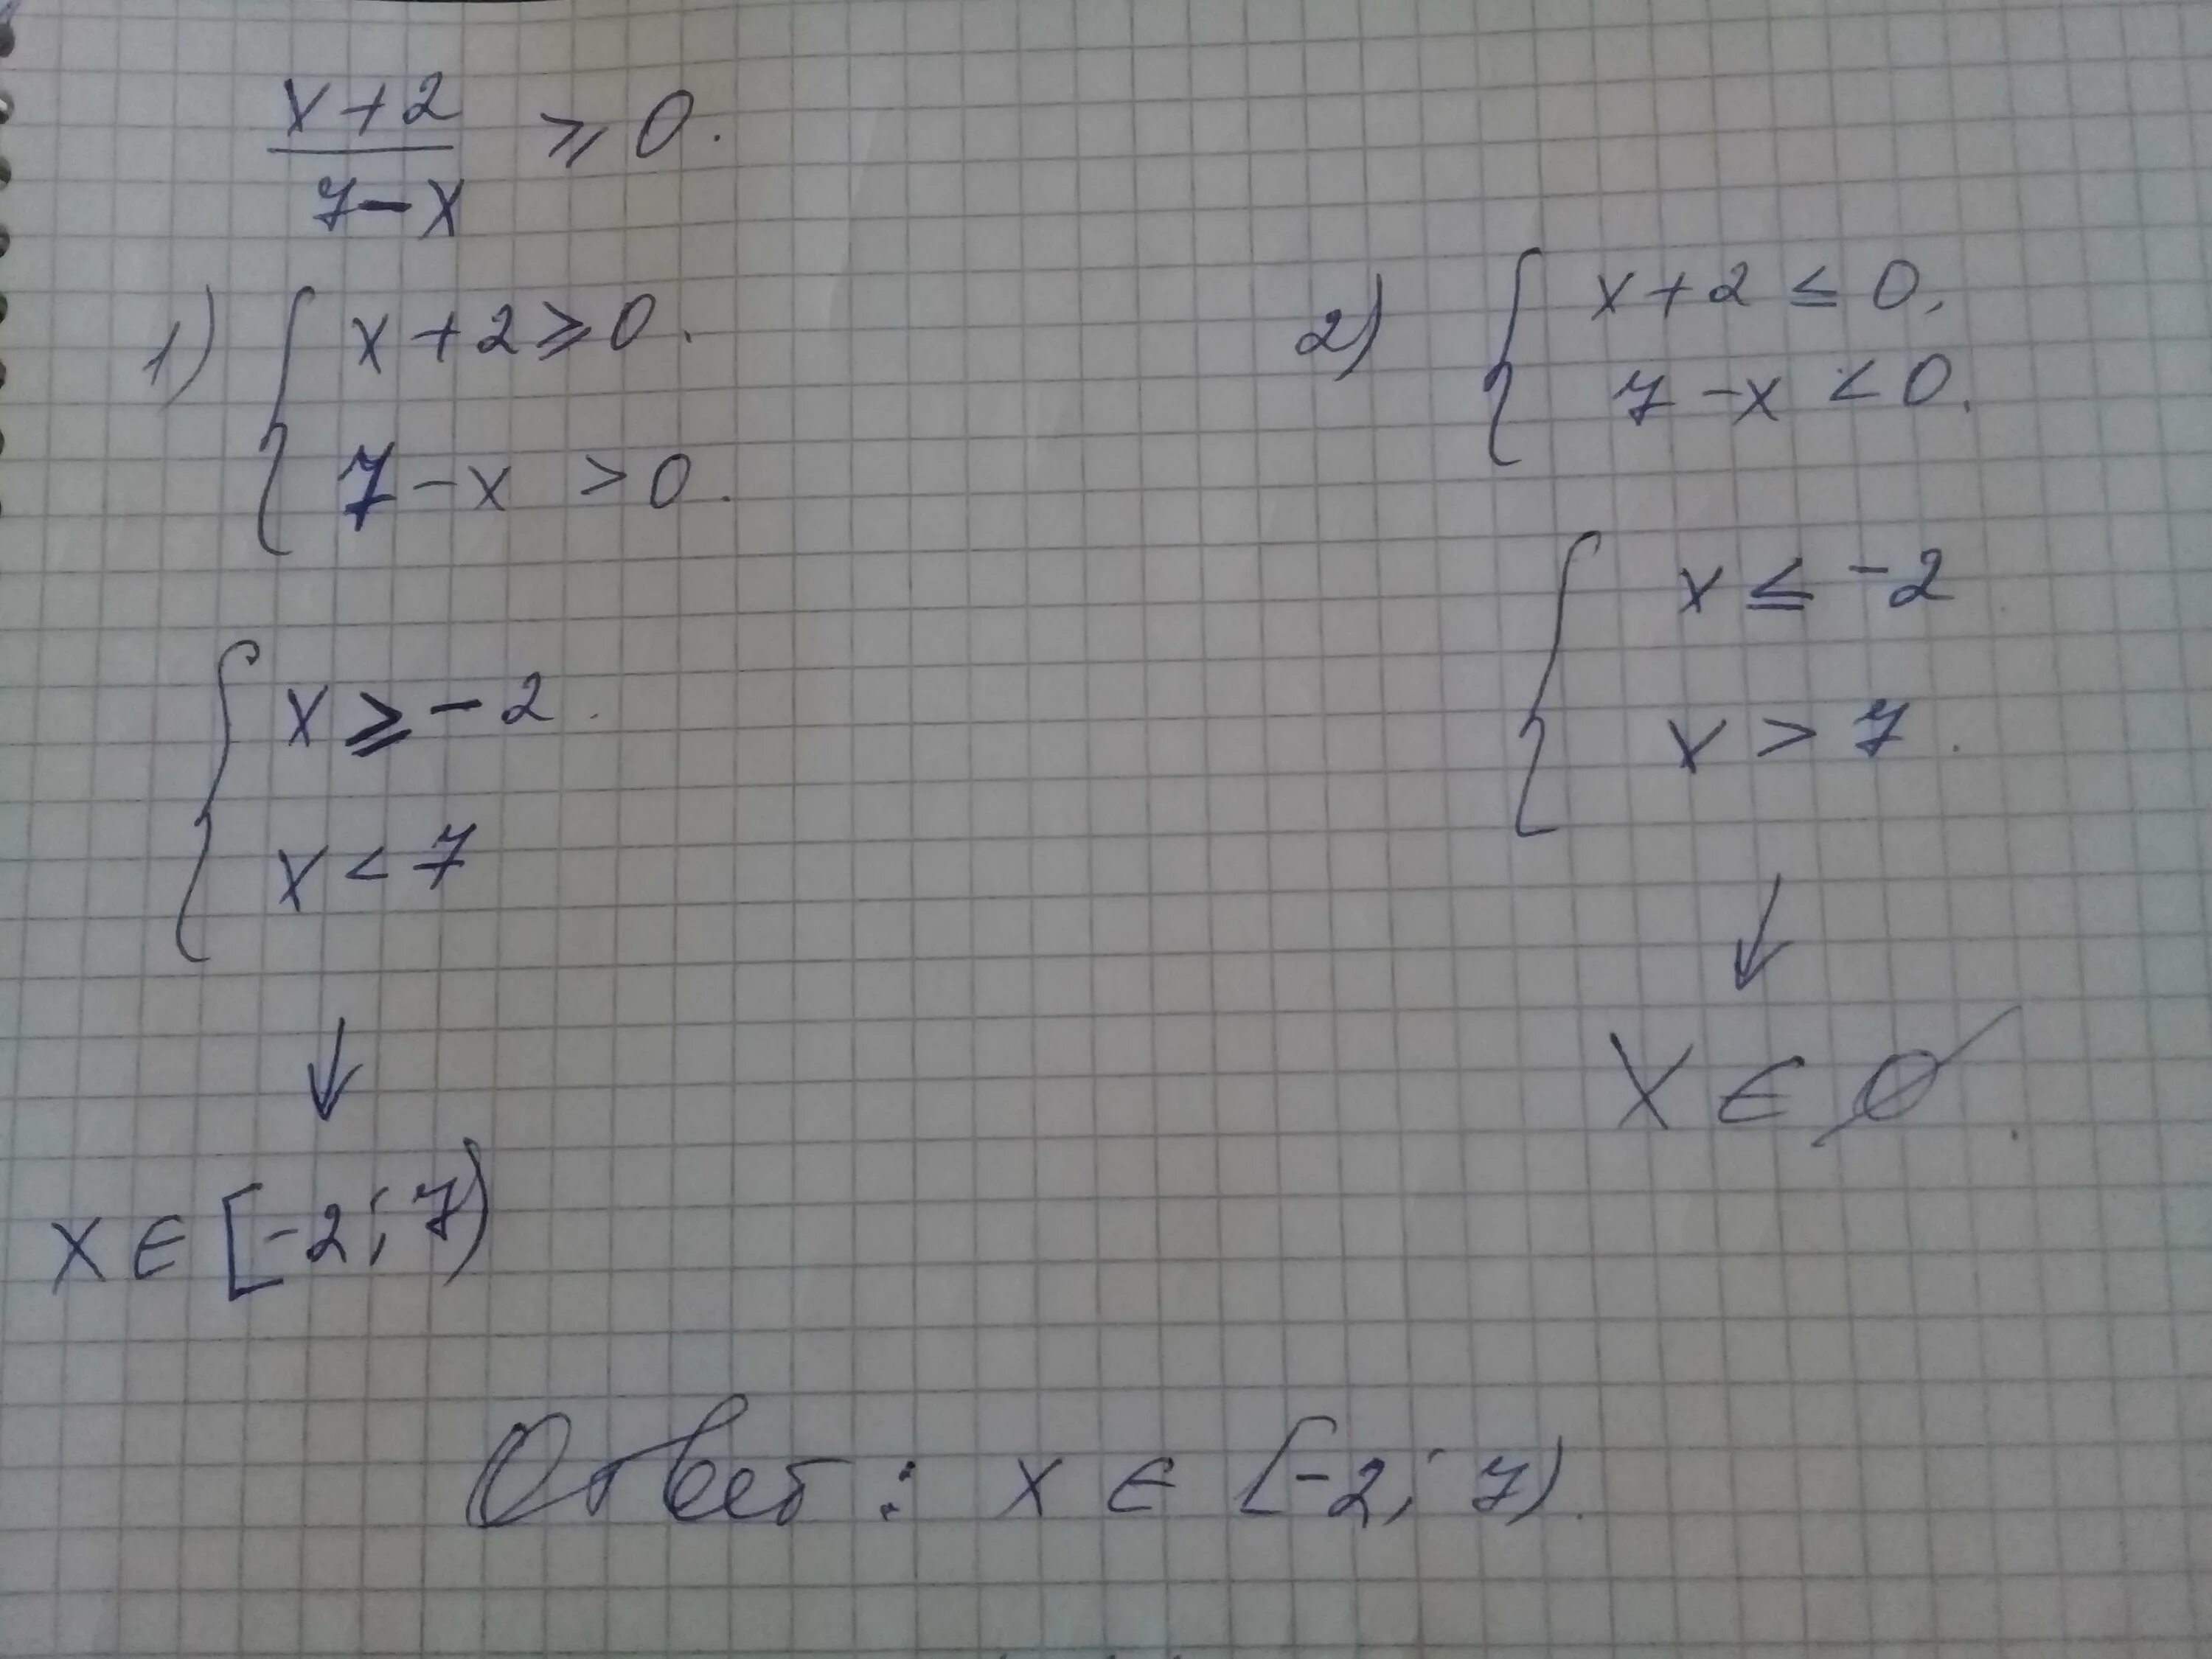 X 2 7x 10 больше или равно нулю. 7x-x2 больше или равно 0. X больше или равно 0. 7x-x2 больше 0. X2 12 больше 0